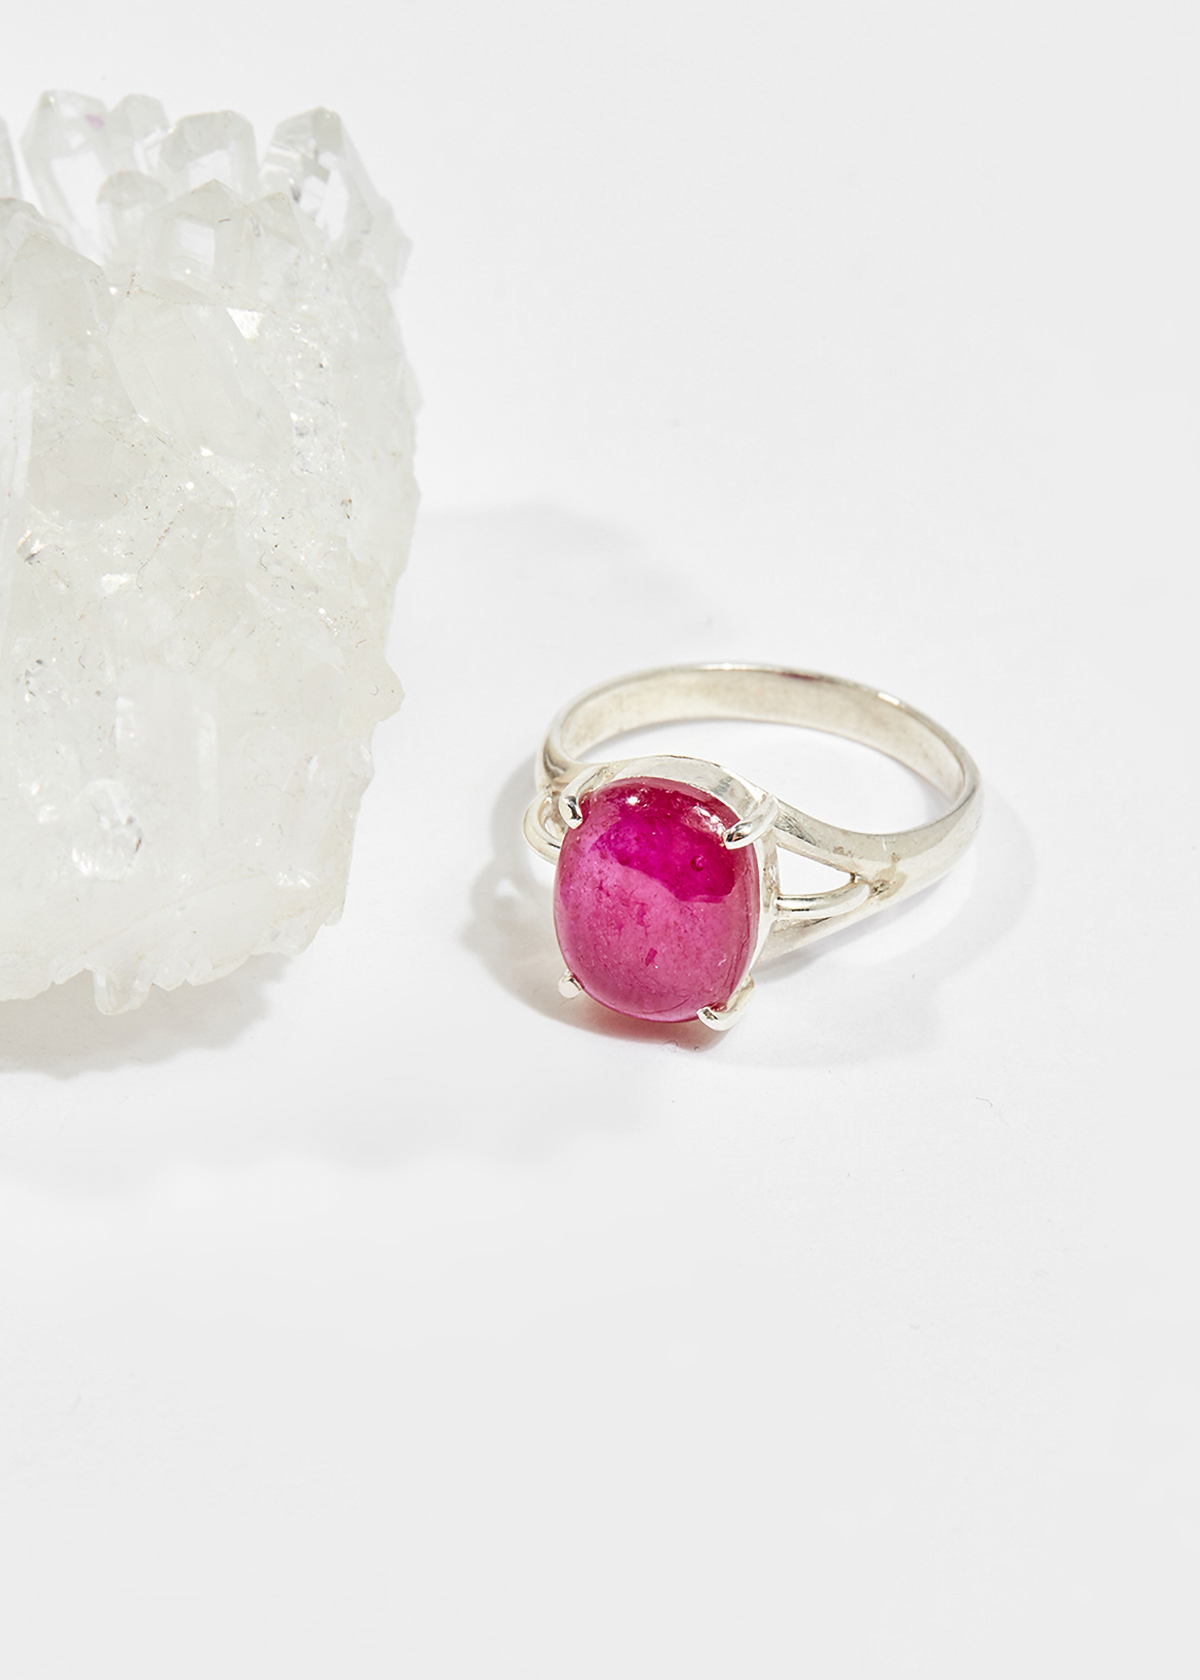 Nhẫn bạc đá Ruby oval ni16  mệnh hỏa , thổ - Ngọc Quý Gemstones